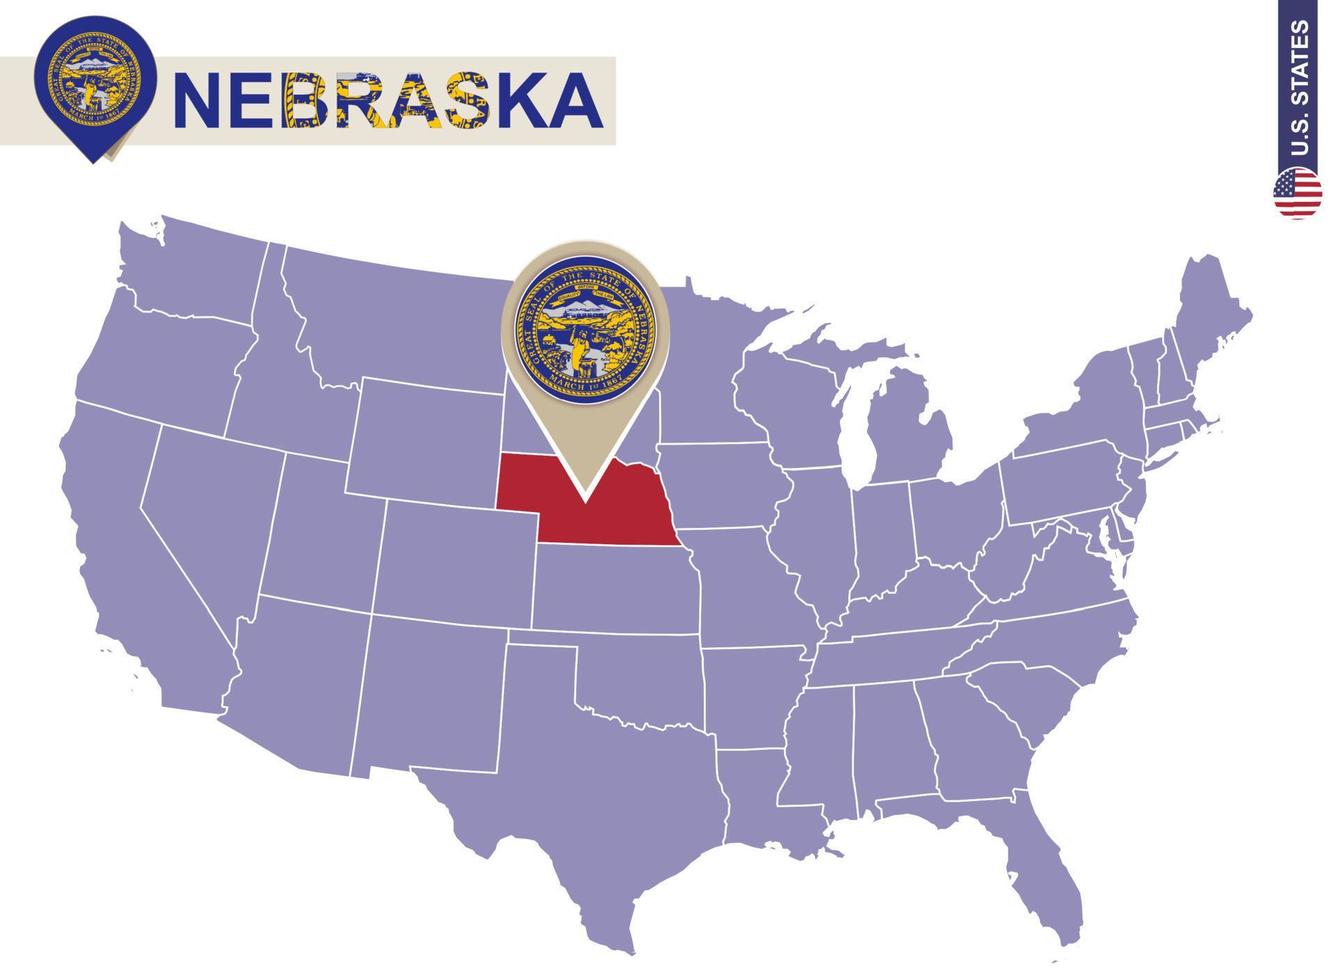 nebraska staat op de kaart van de vs. nebraska vlag en kaart. vector